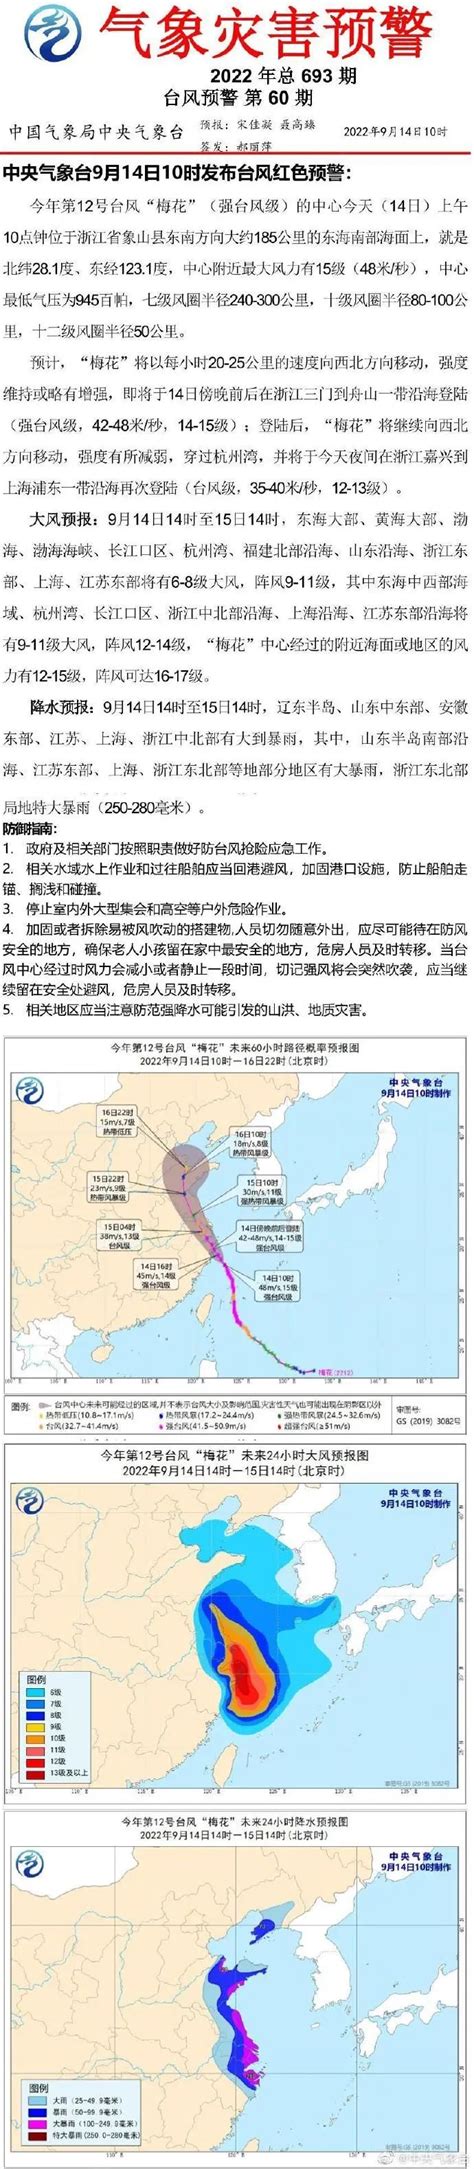 台风红色预警18日继续 “莎莉嘉”中午前后登陆海南--图片频道--人民网